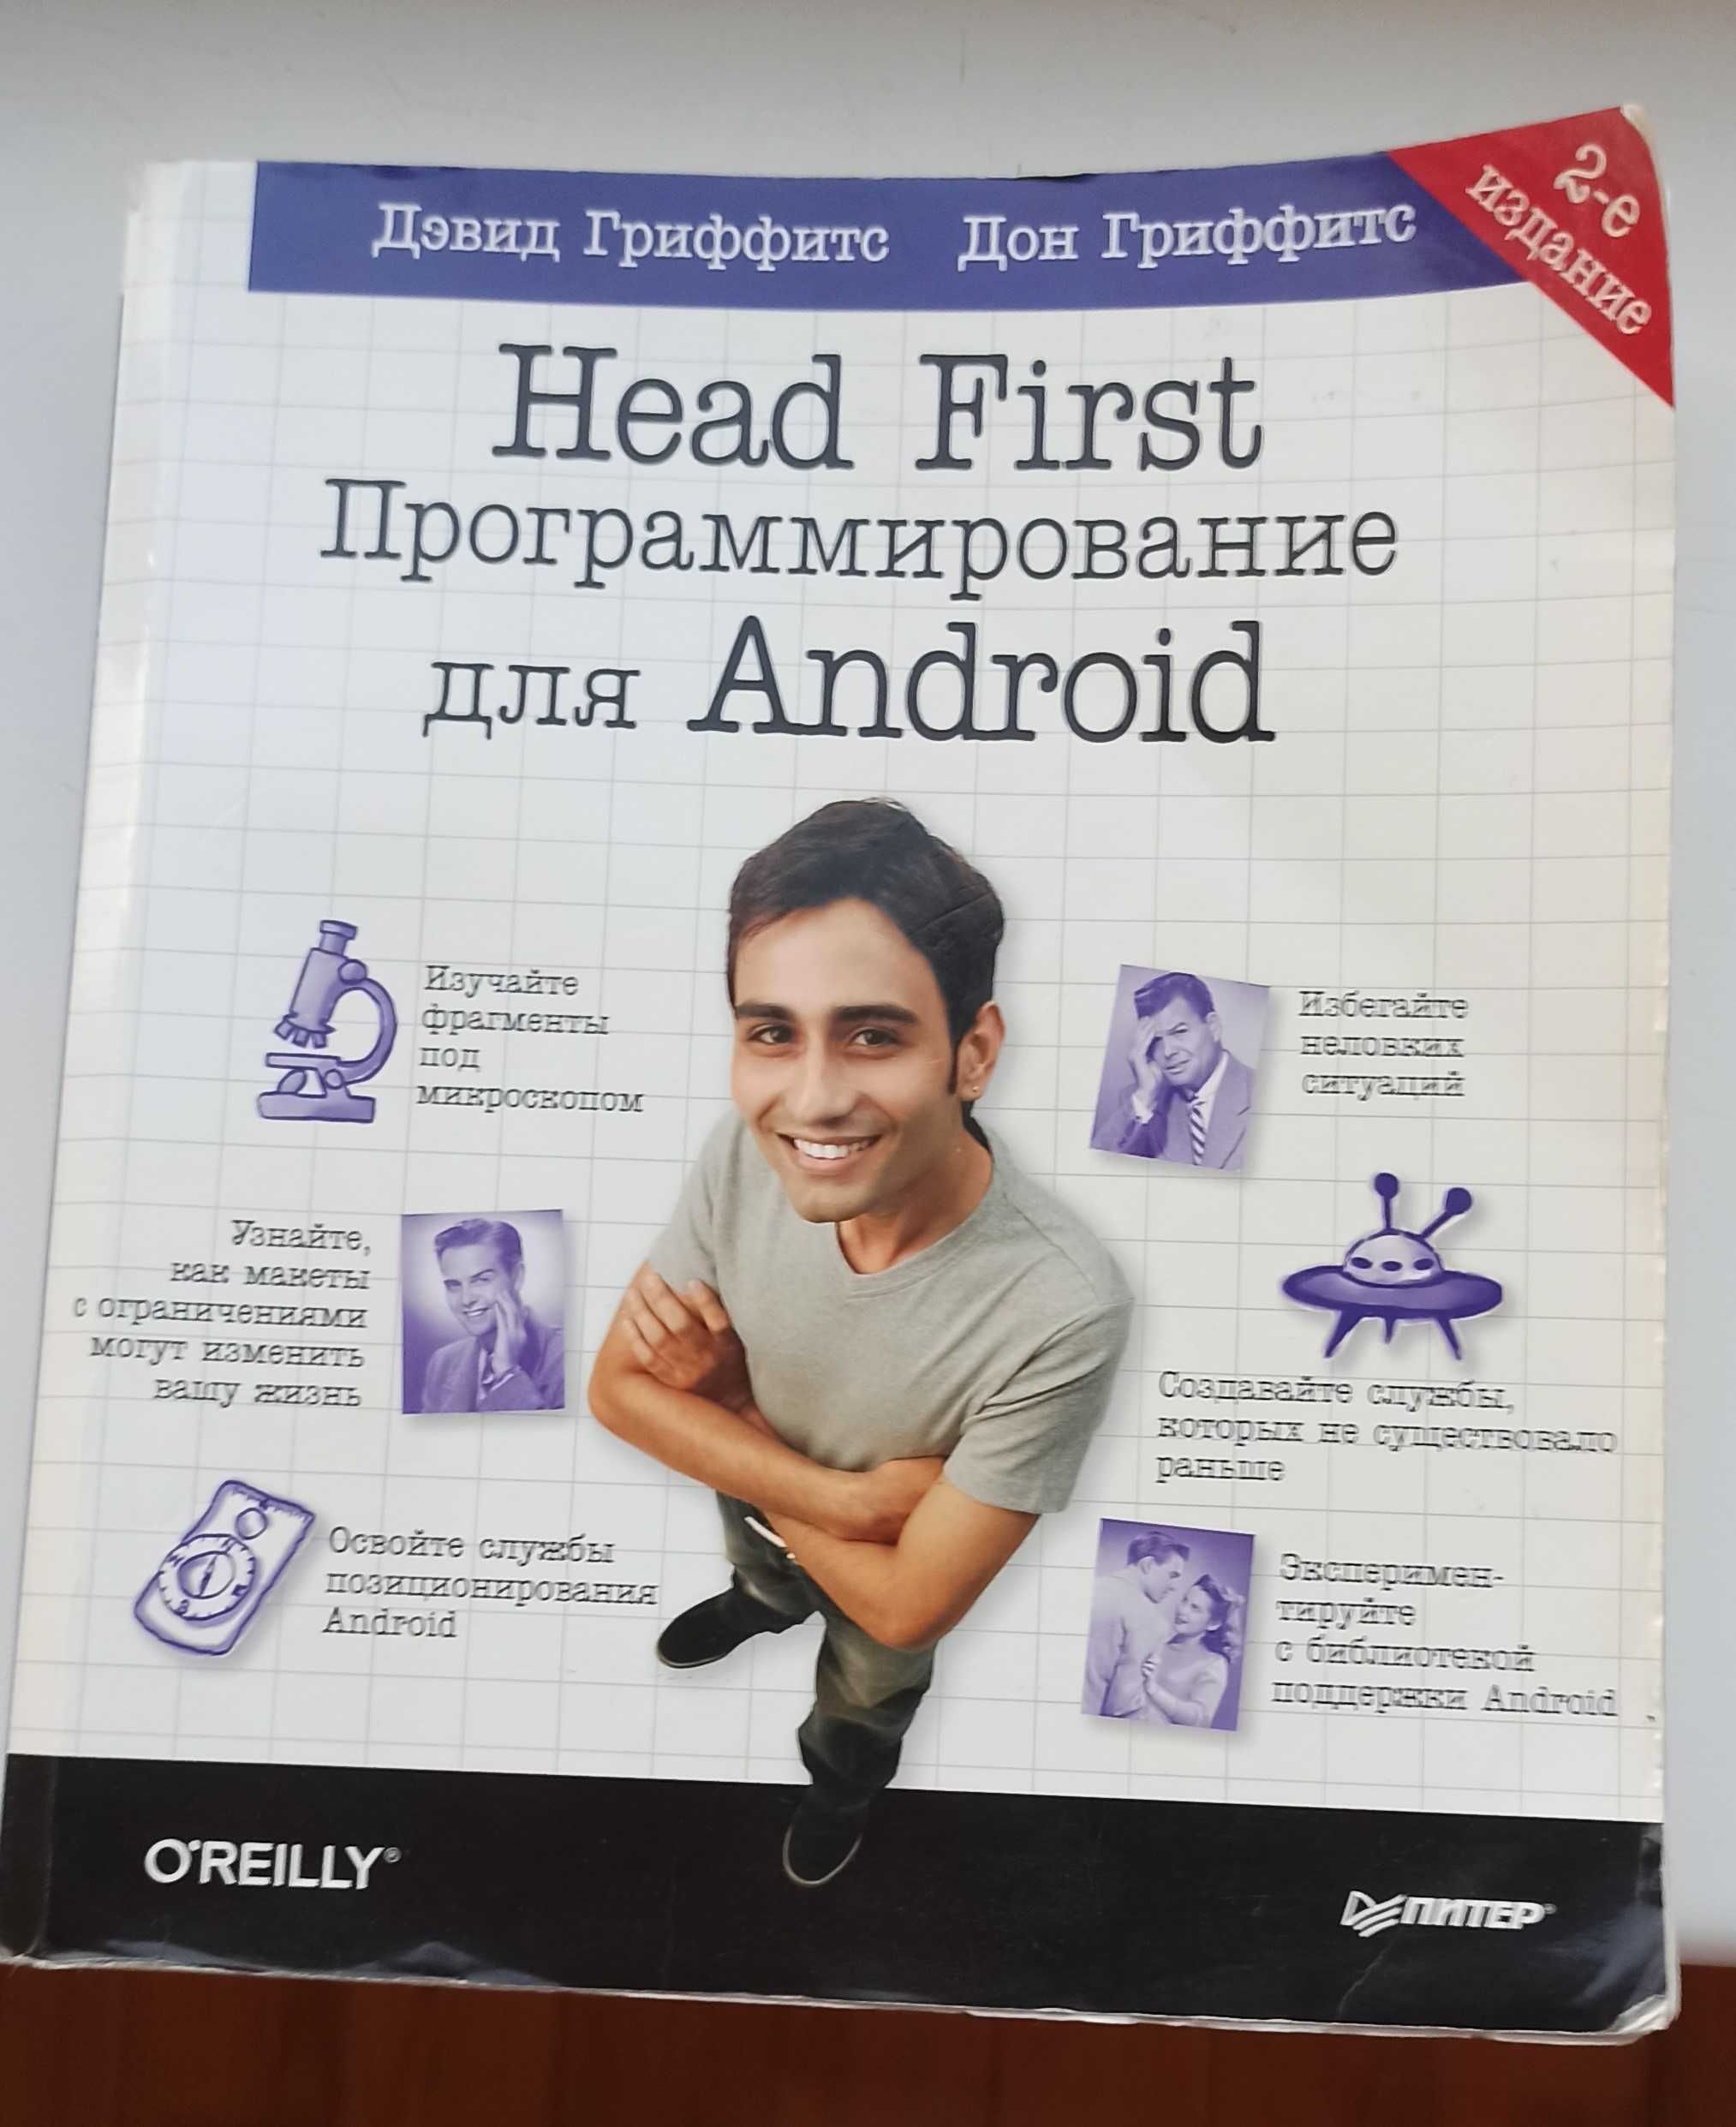 Продается книга" Head First Программирование для Android" 2-е издание"